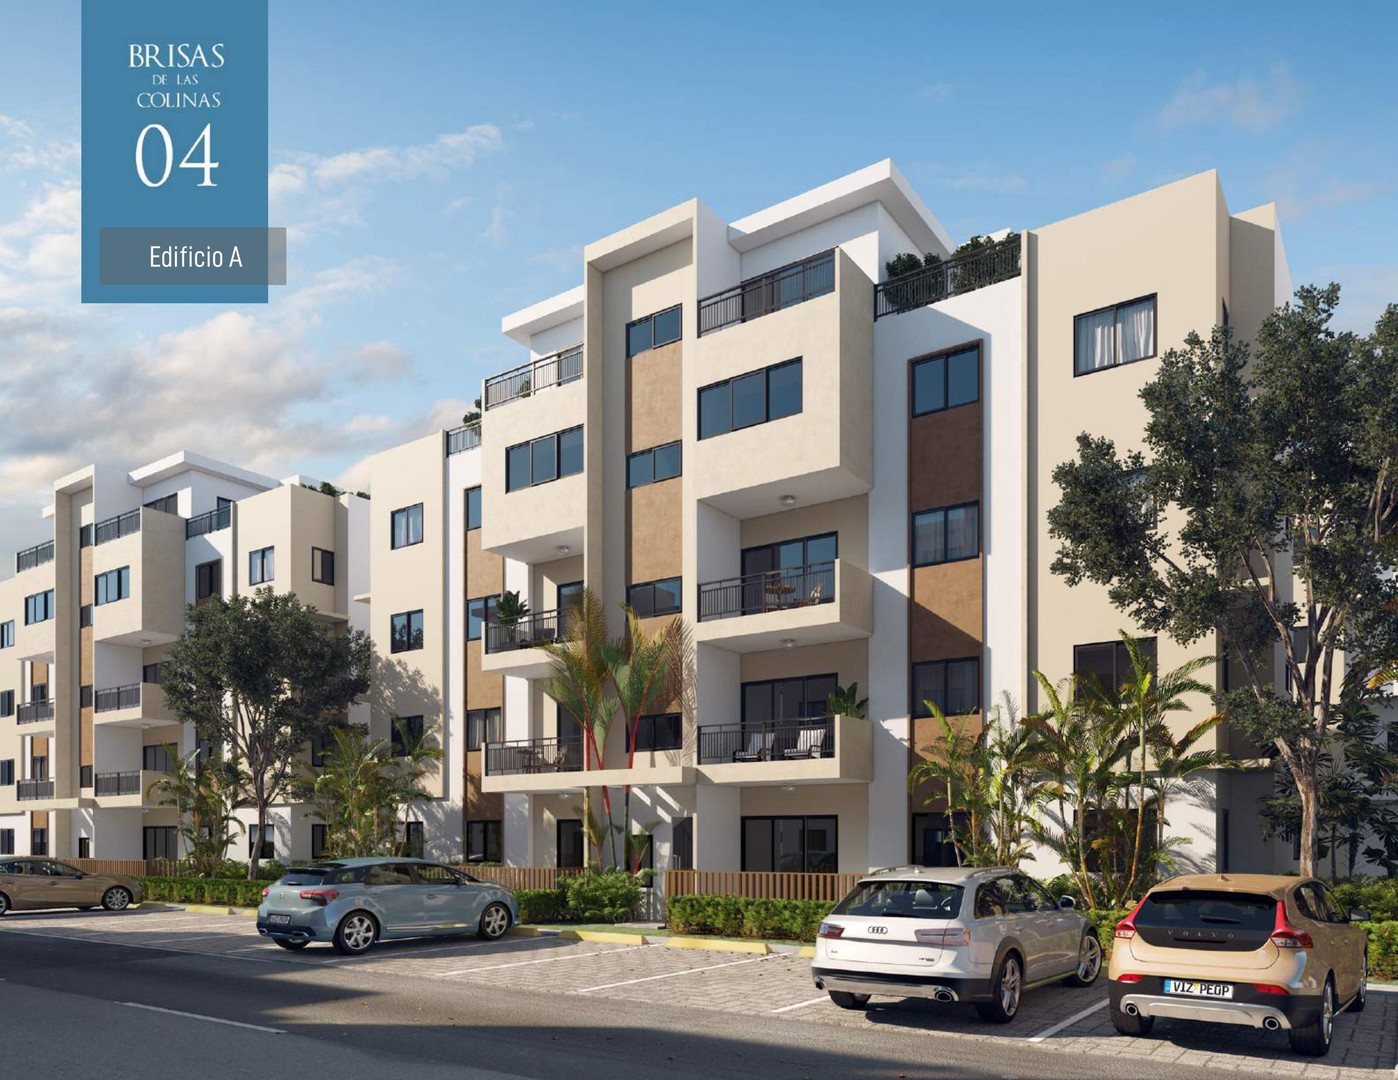 apartamentos - Apartamento en ventas en el proyecto Brisas de las Colinas 4, Santo Domingo